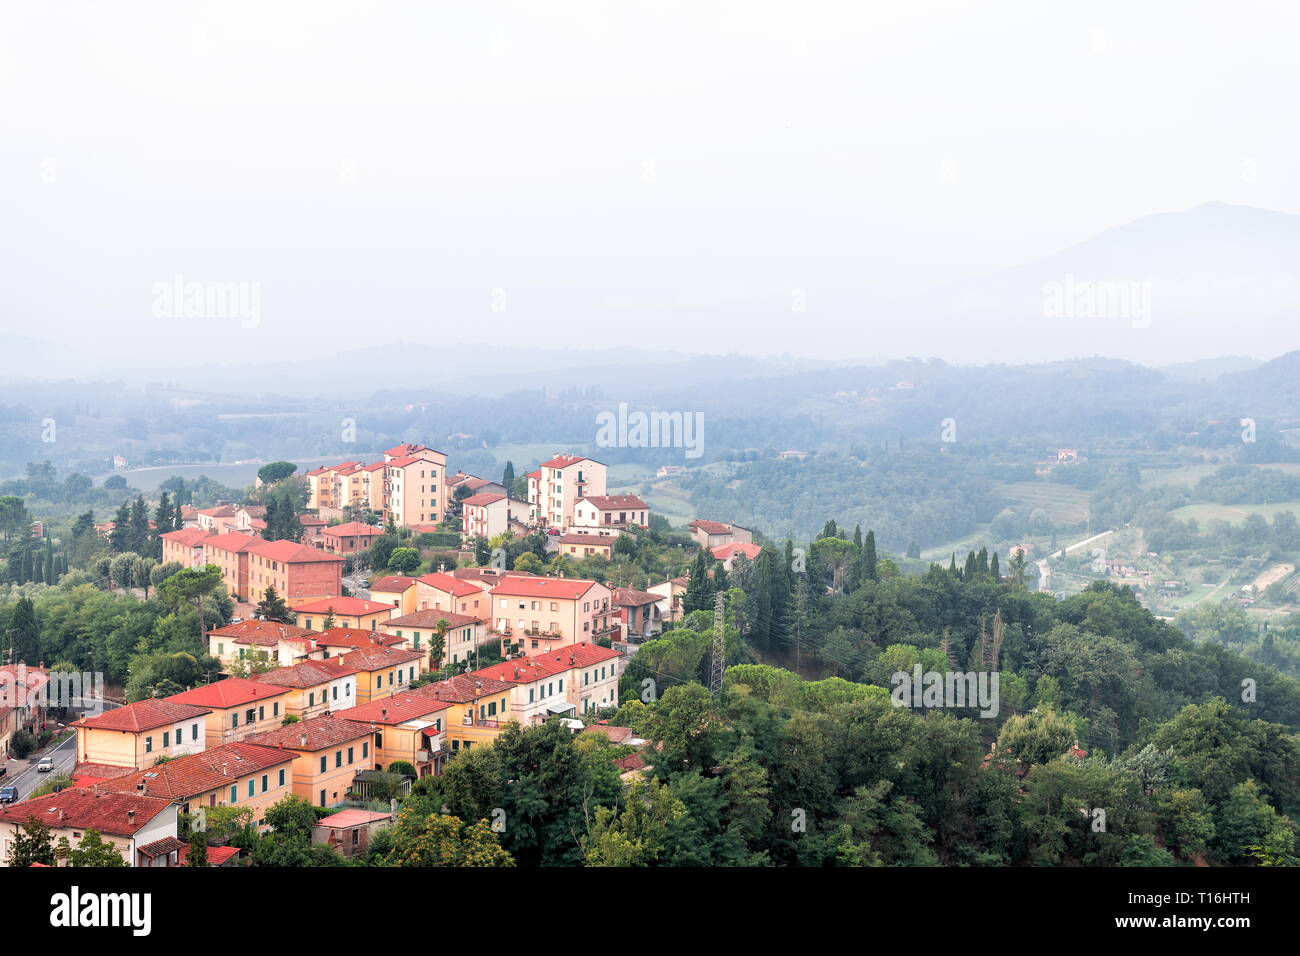 Chiusi Dorf Stadtbild in der Toskana Italien mit orange rot Dach tile Häuser am Berg Land und sanften Hügeln mit Nebel und Dunst Nebel Stockfoto